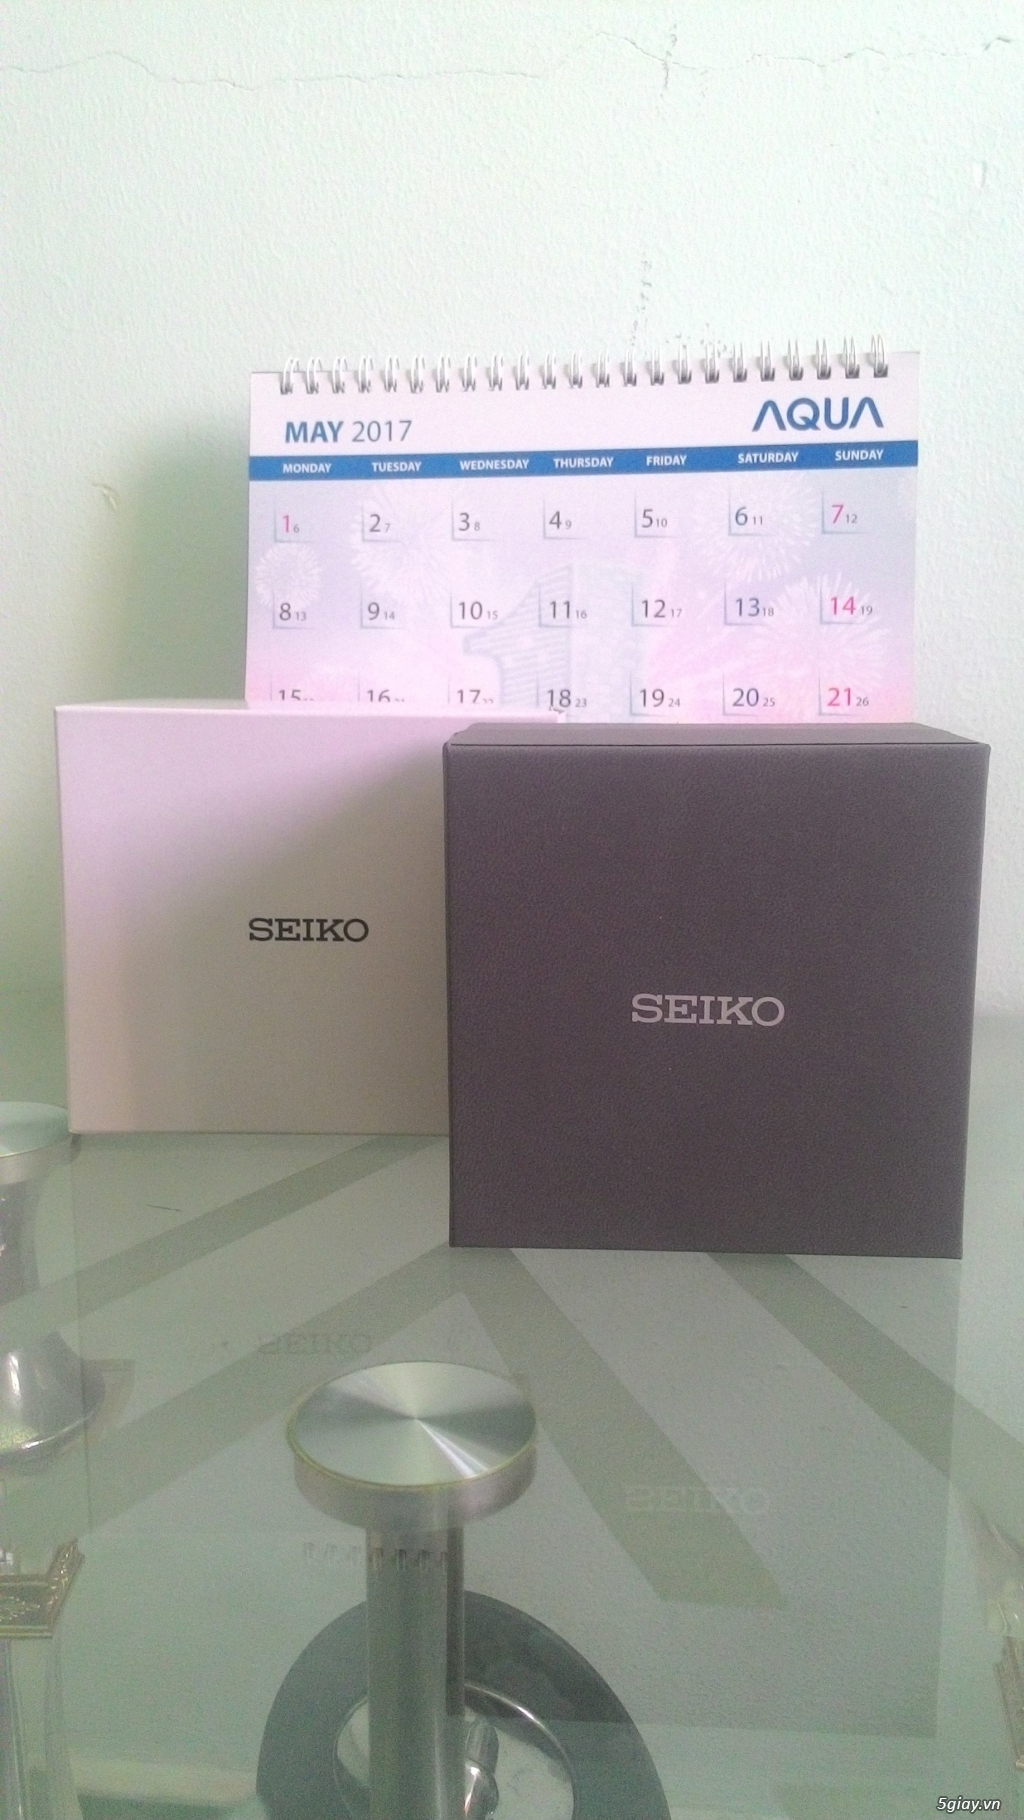 Đồng hồ Seiko Spirit SCDC085 xách tay Nhật, mua ngày 13/05/2017 - 1